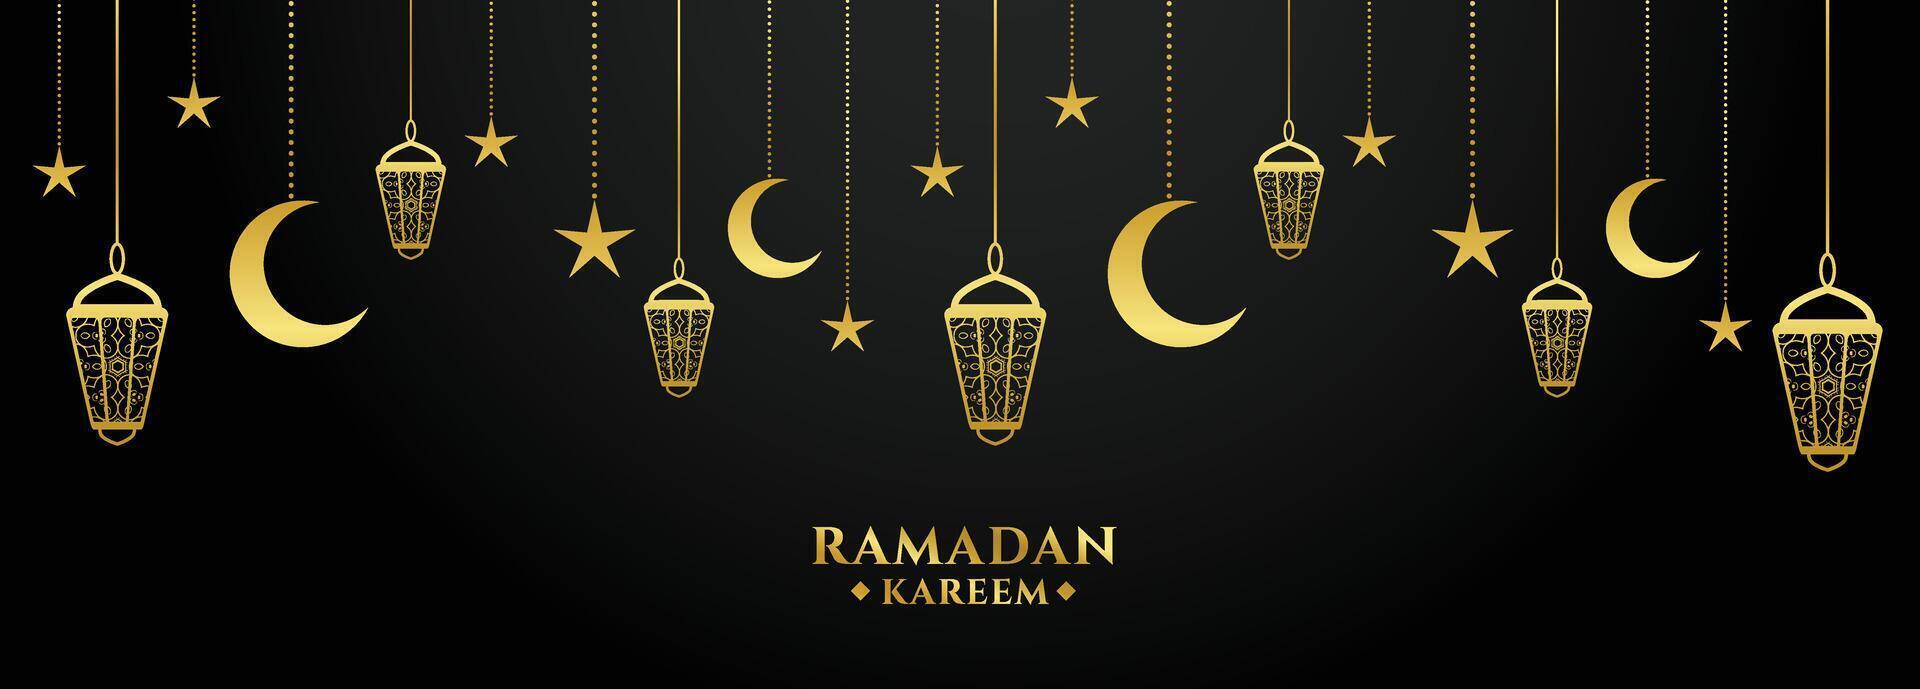 Ramadan kareem d'oro e nero decorativo bandiera design vettore